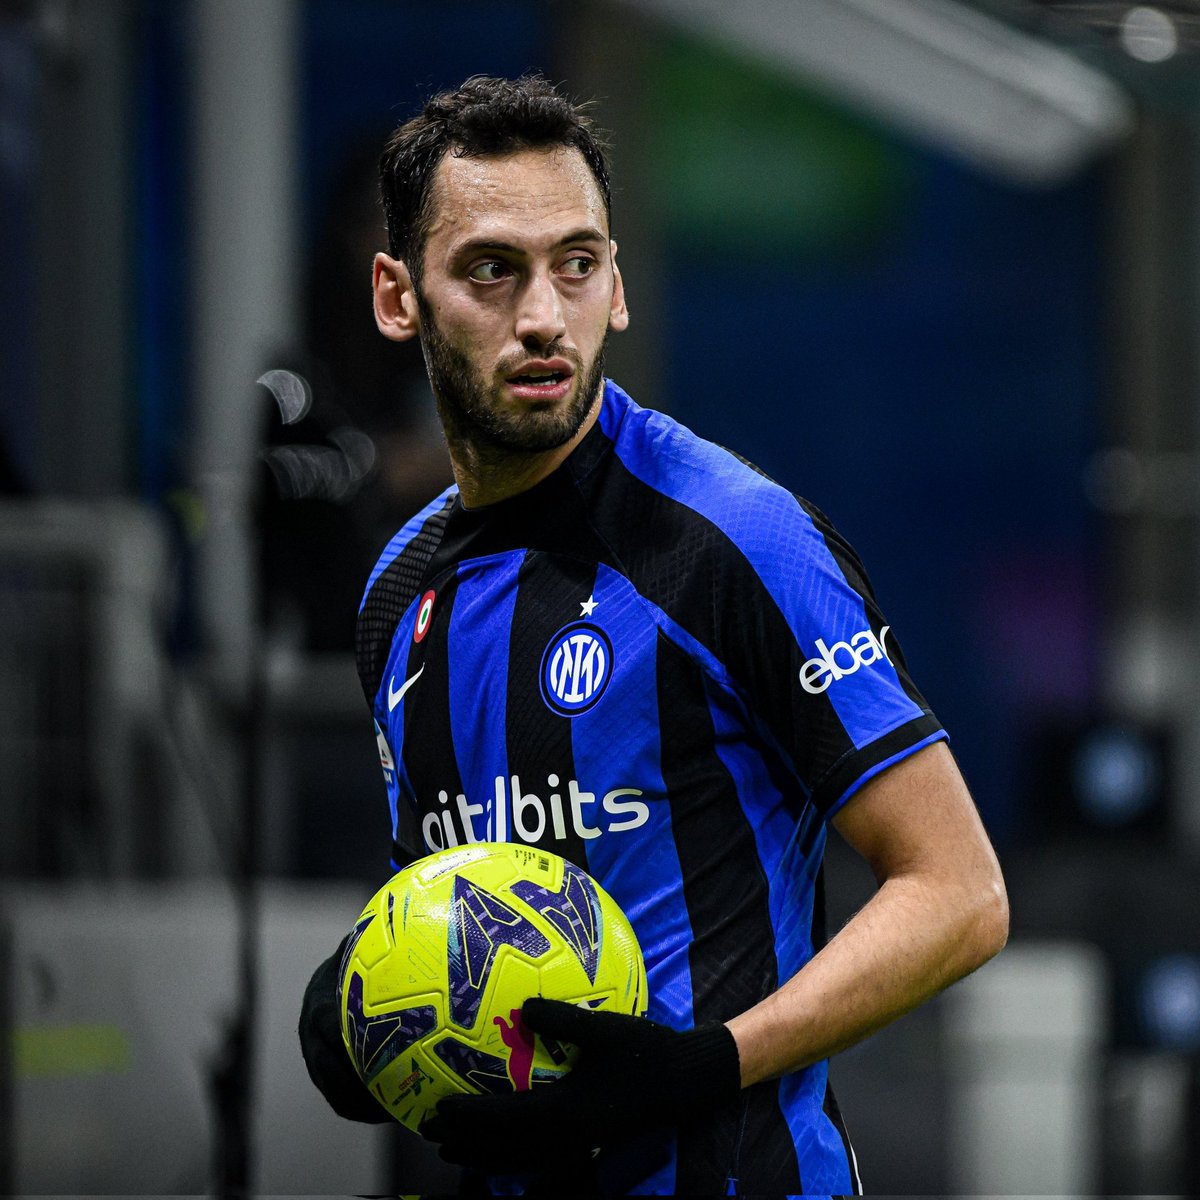 Kariyerinin ilk lig şampiyonluğuna ulaşan Hakan Çalhanoğlu, Inter kariyerindeki 6. kupasını kazandı. 🏆 1x Serie A 🏆 2x İtalya Kupası 🏆 3x İtalya Süper Kupa